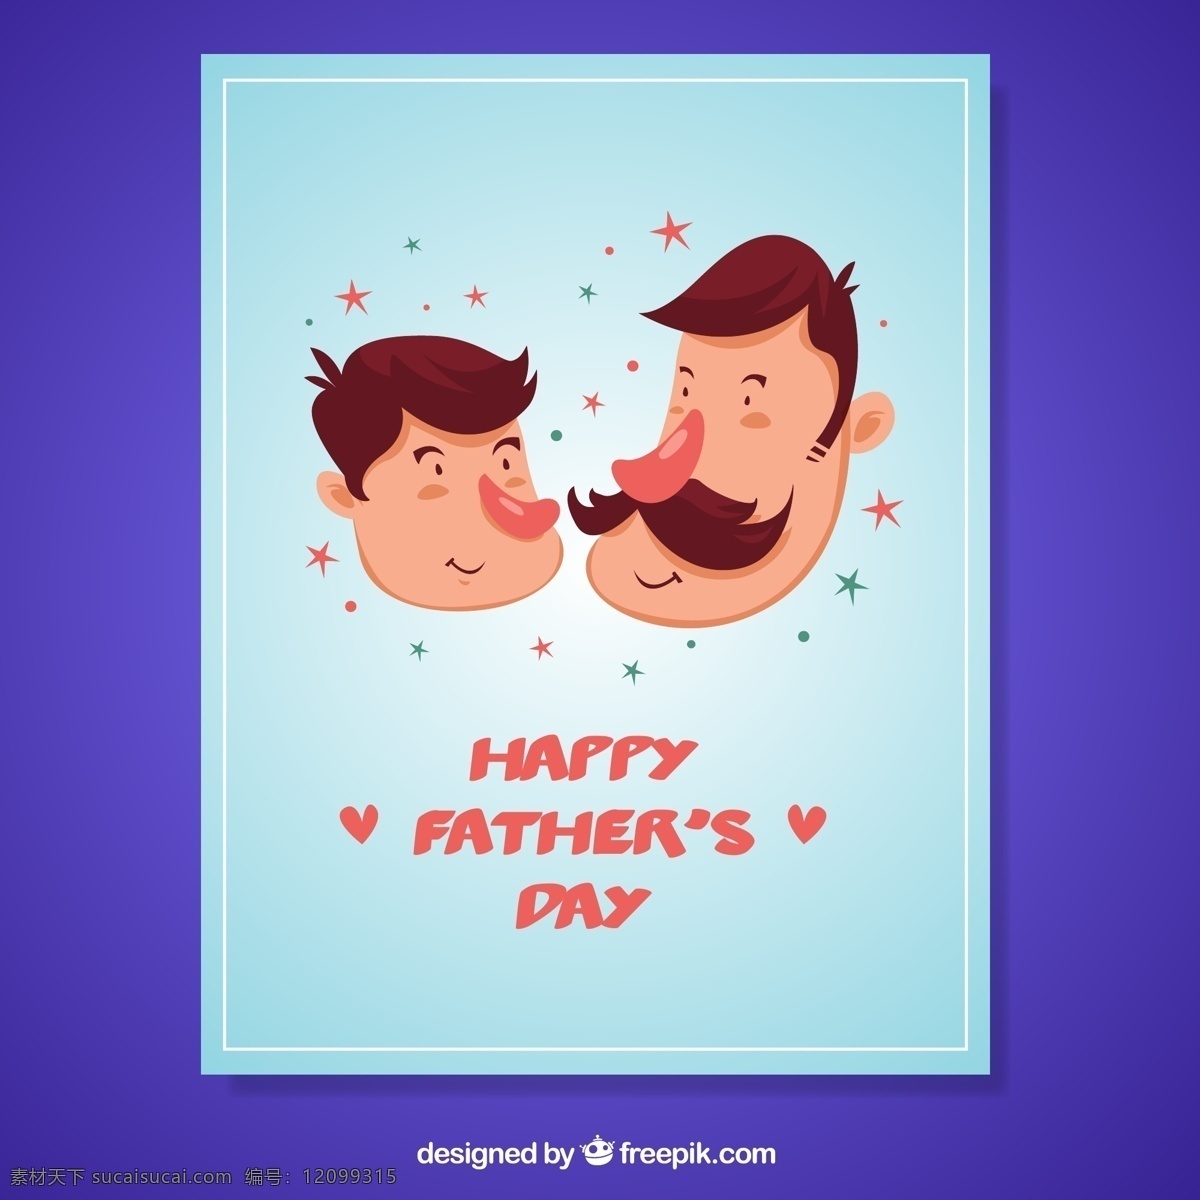 卡通 父子 头像 父亲节 贺卡 矢量图 happy fathers day 爸爸 儿子